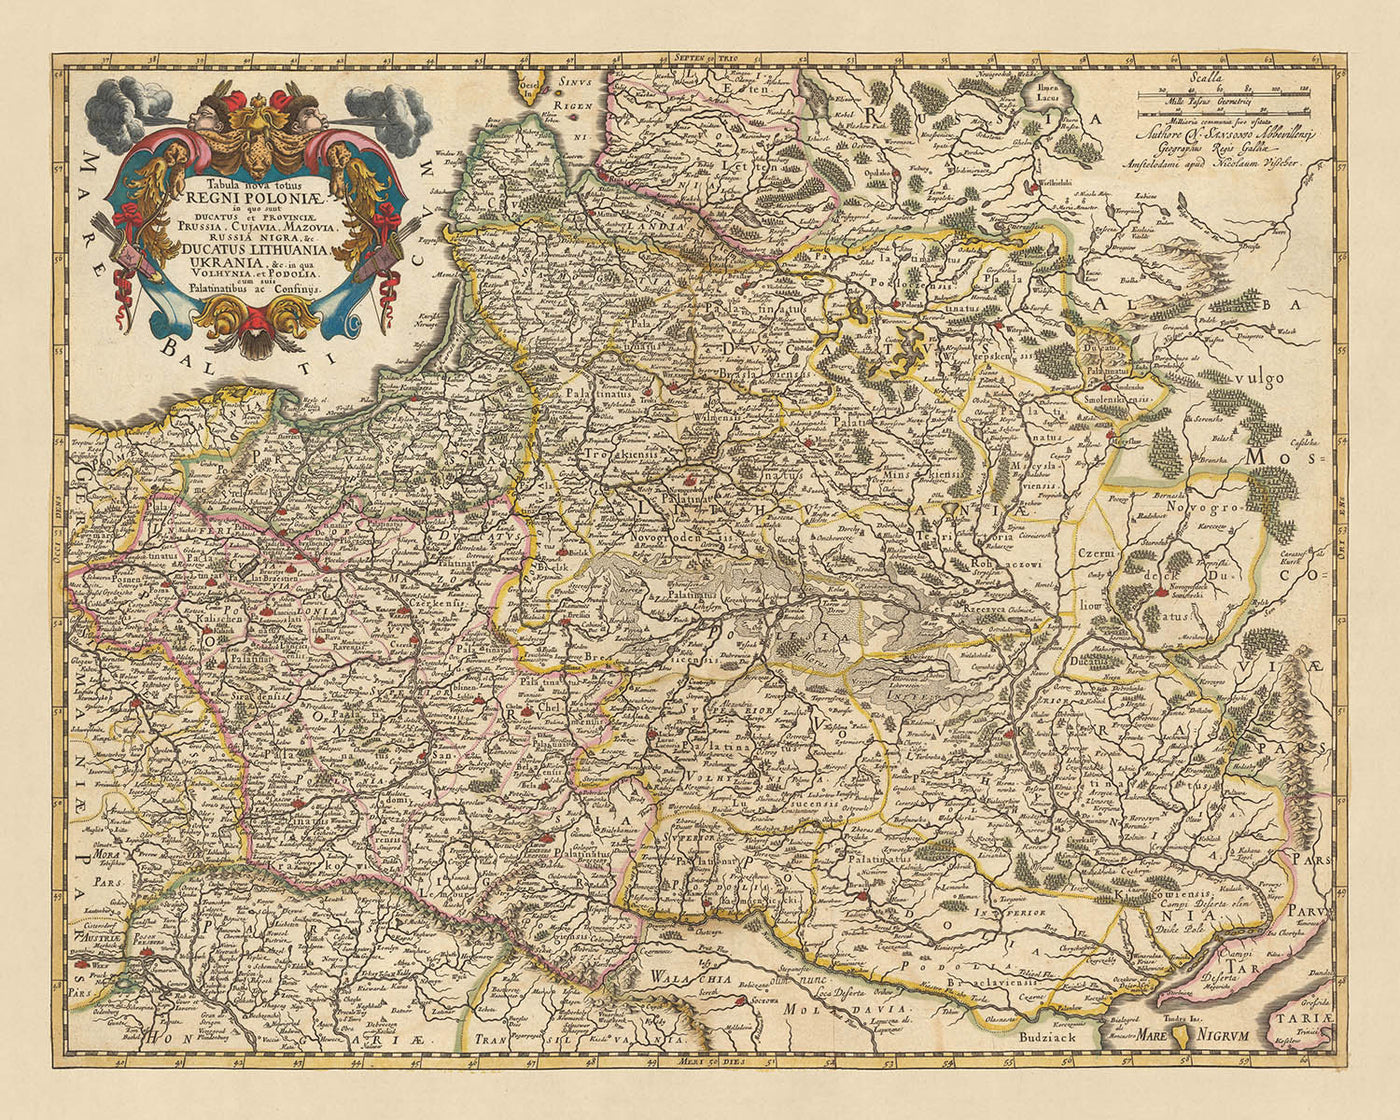 Old Map of Poland by Visscher, 1690: Warsaw, Vilnius, Minsk, Vienna, Kyiv